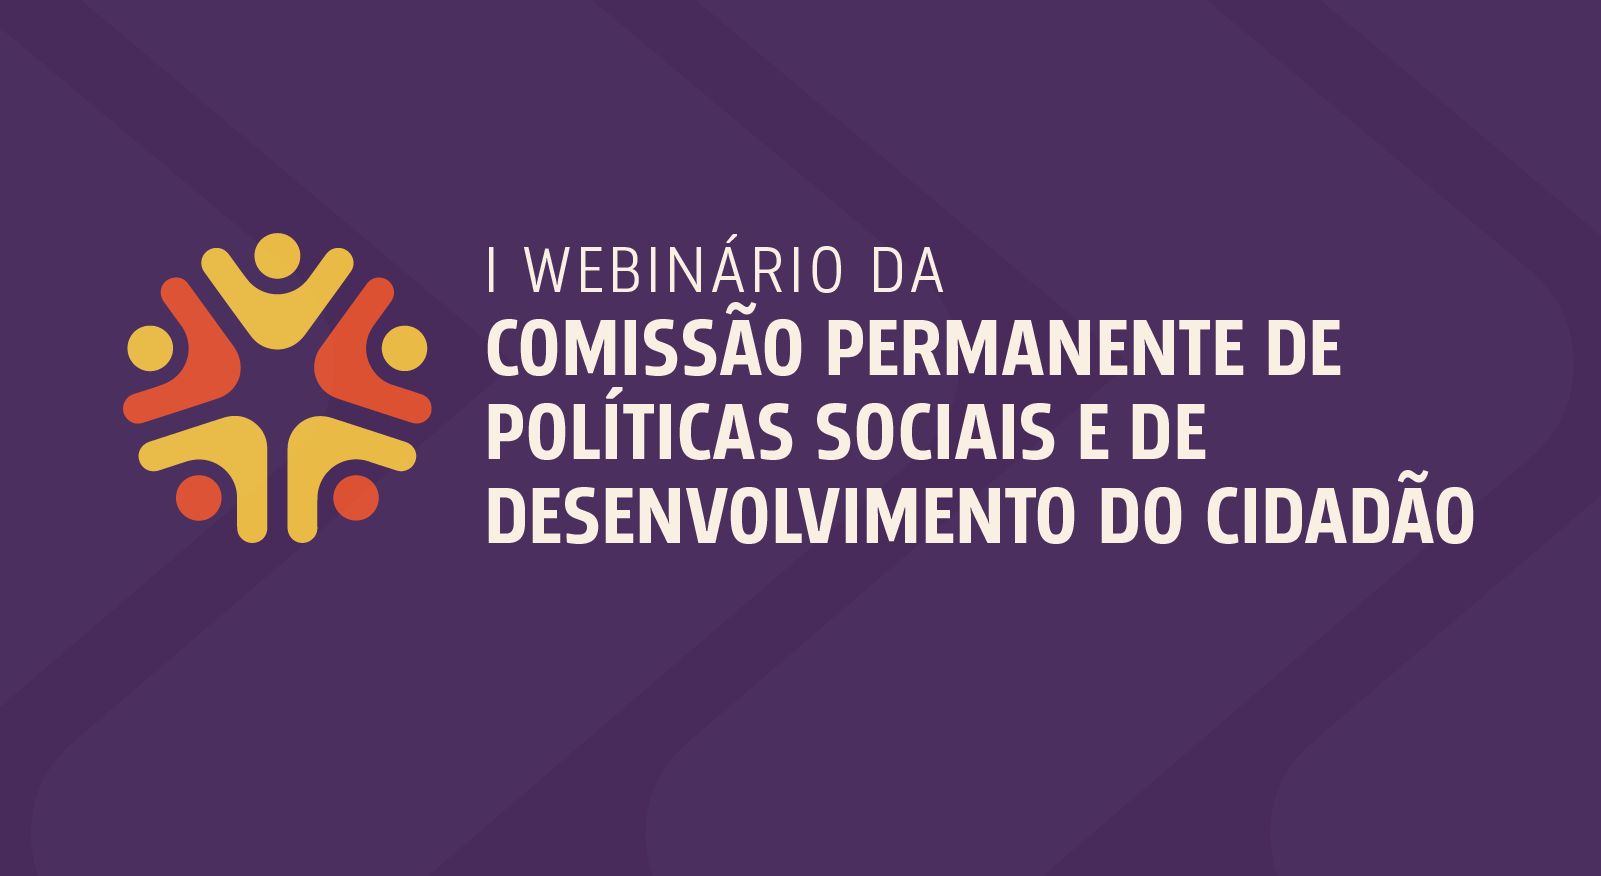  Imagem colorida mostra o banner do I Webinário da Comissão Permanente de Políticas Sociais e de Desenvolvimento do Cidadão. 